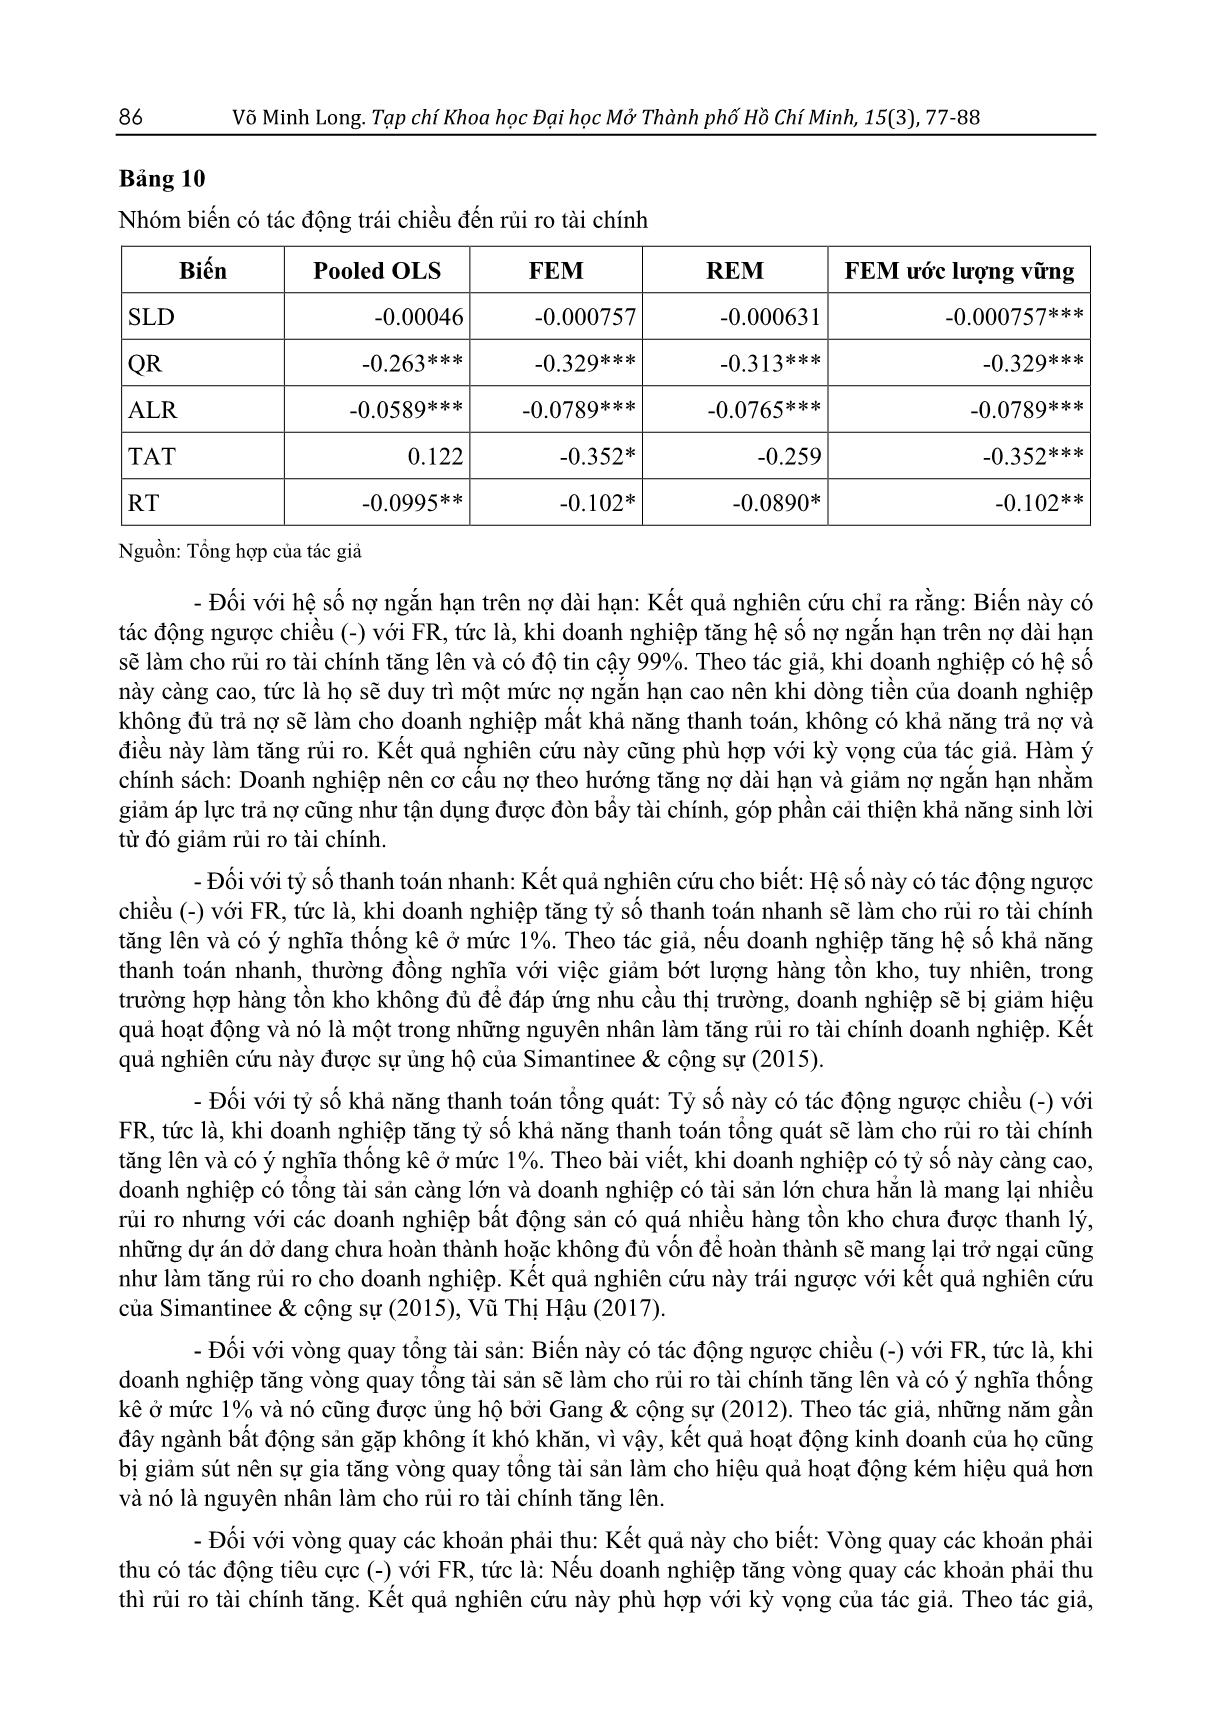 Một số nhân tố ảnh hưởng đến rủi ro tài chính - Nghiên cứu doanh nghiệp bất động sản niêm yết trên Sở Giao dịch chứng khoán Thành phố Hồ Chí Minh (HSX) trang 10